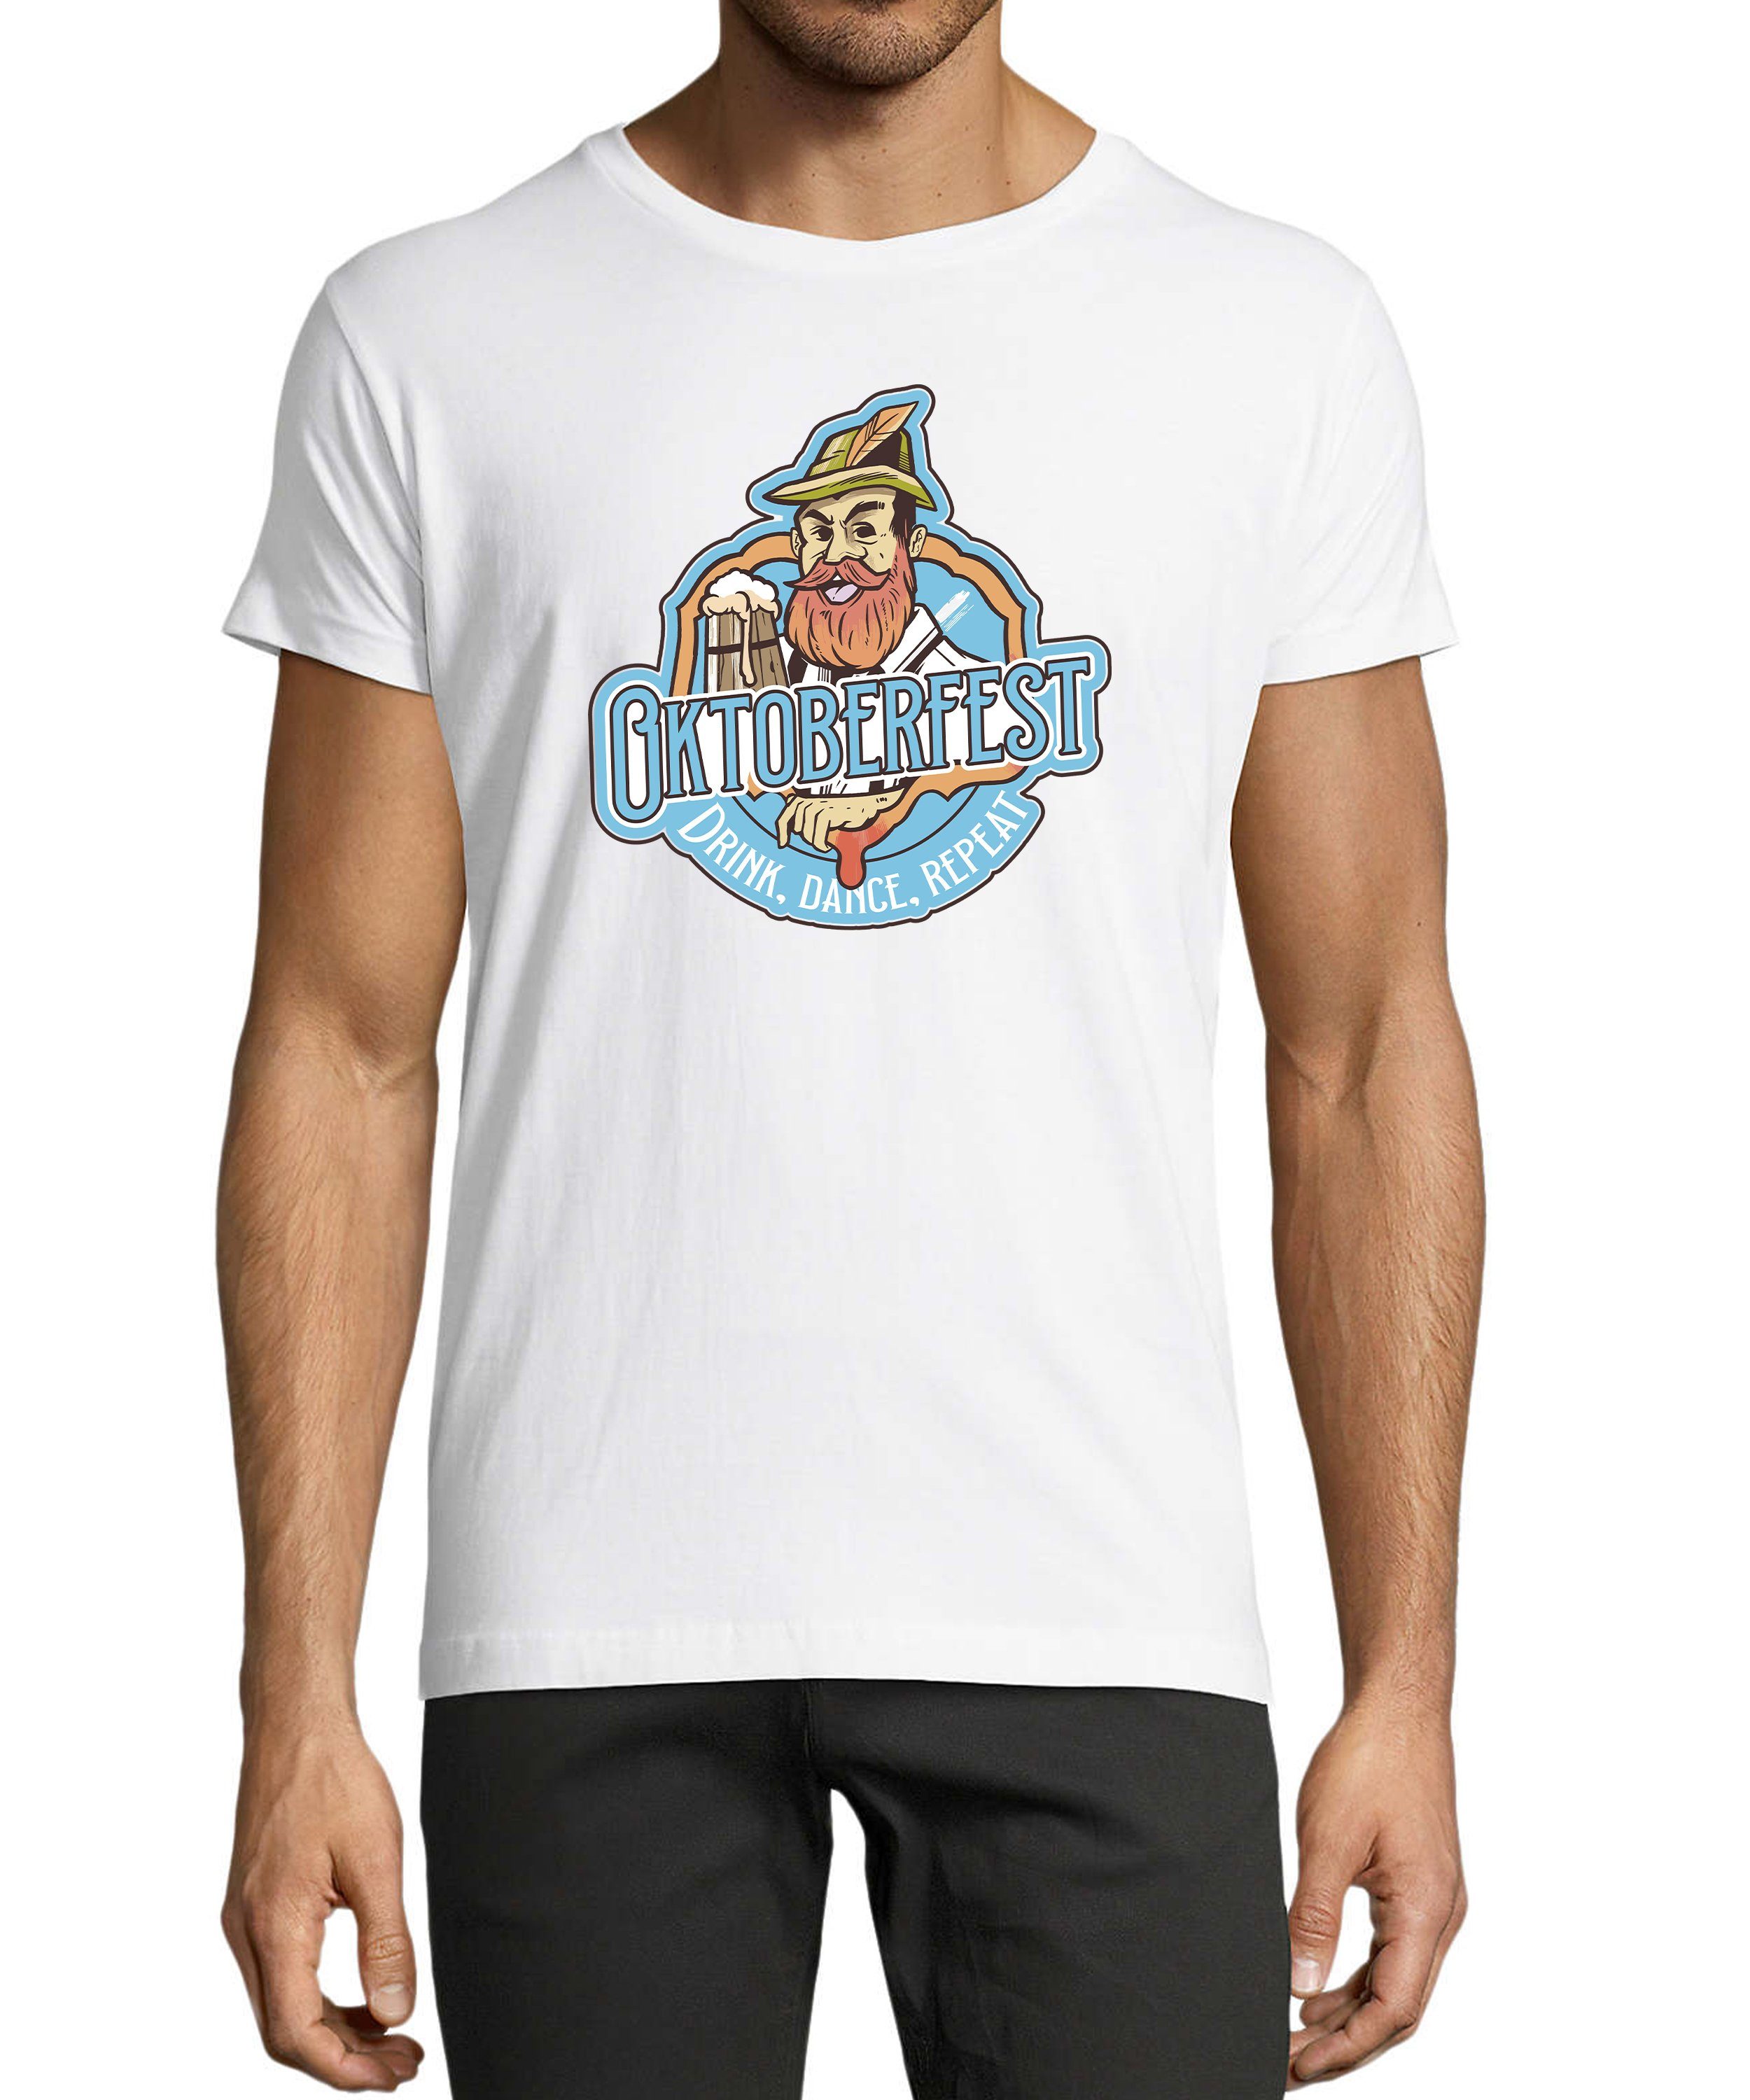 MyDesign24 T-Shirt Herren Fun Shirt Regular i318 mit Aufdruck T-Shirt Baumwollshirt Fit, weiss Oktoberfest - Print Trinkshirt